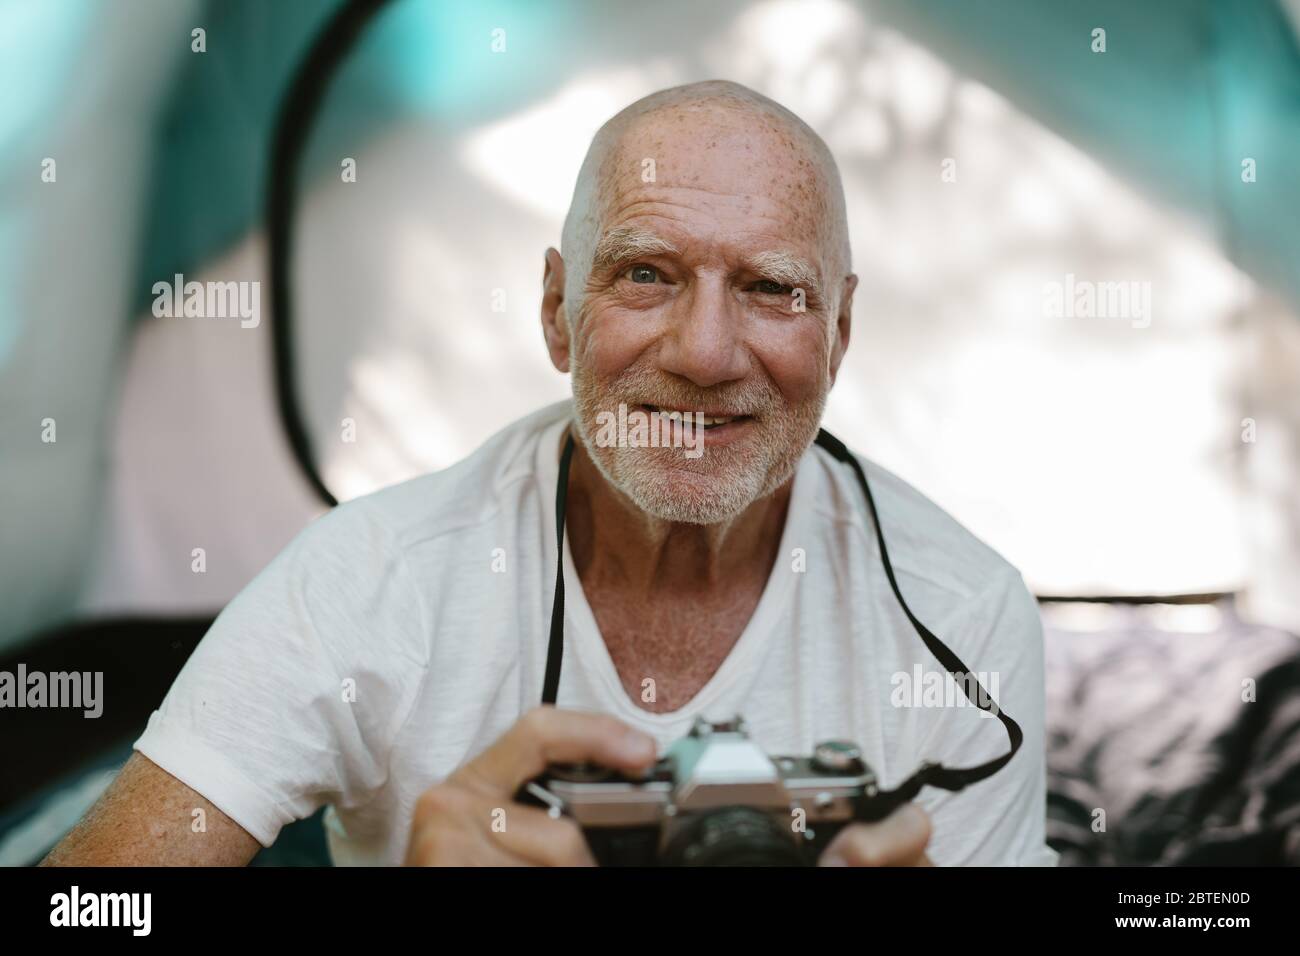 Primo piano di un uomo anziano seduto fuori dalla sua tenda da campeggio con una macchina fotografica digitale. Uomo in pensione che fotografa mentre si accampano in natura. Foto Stock